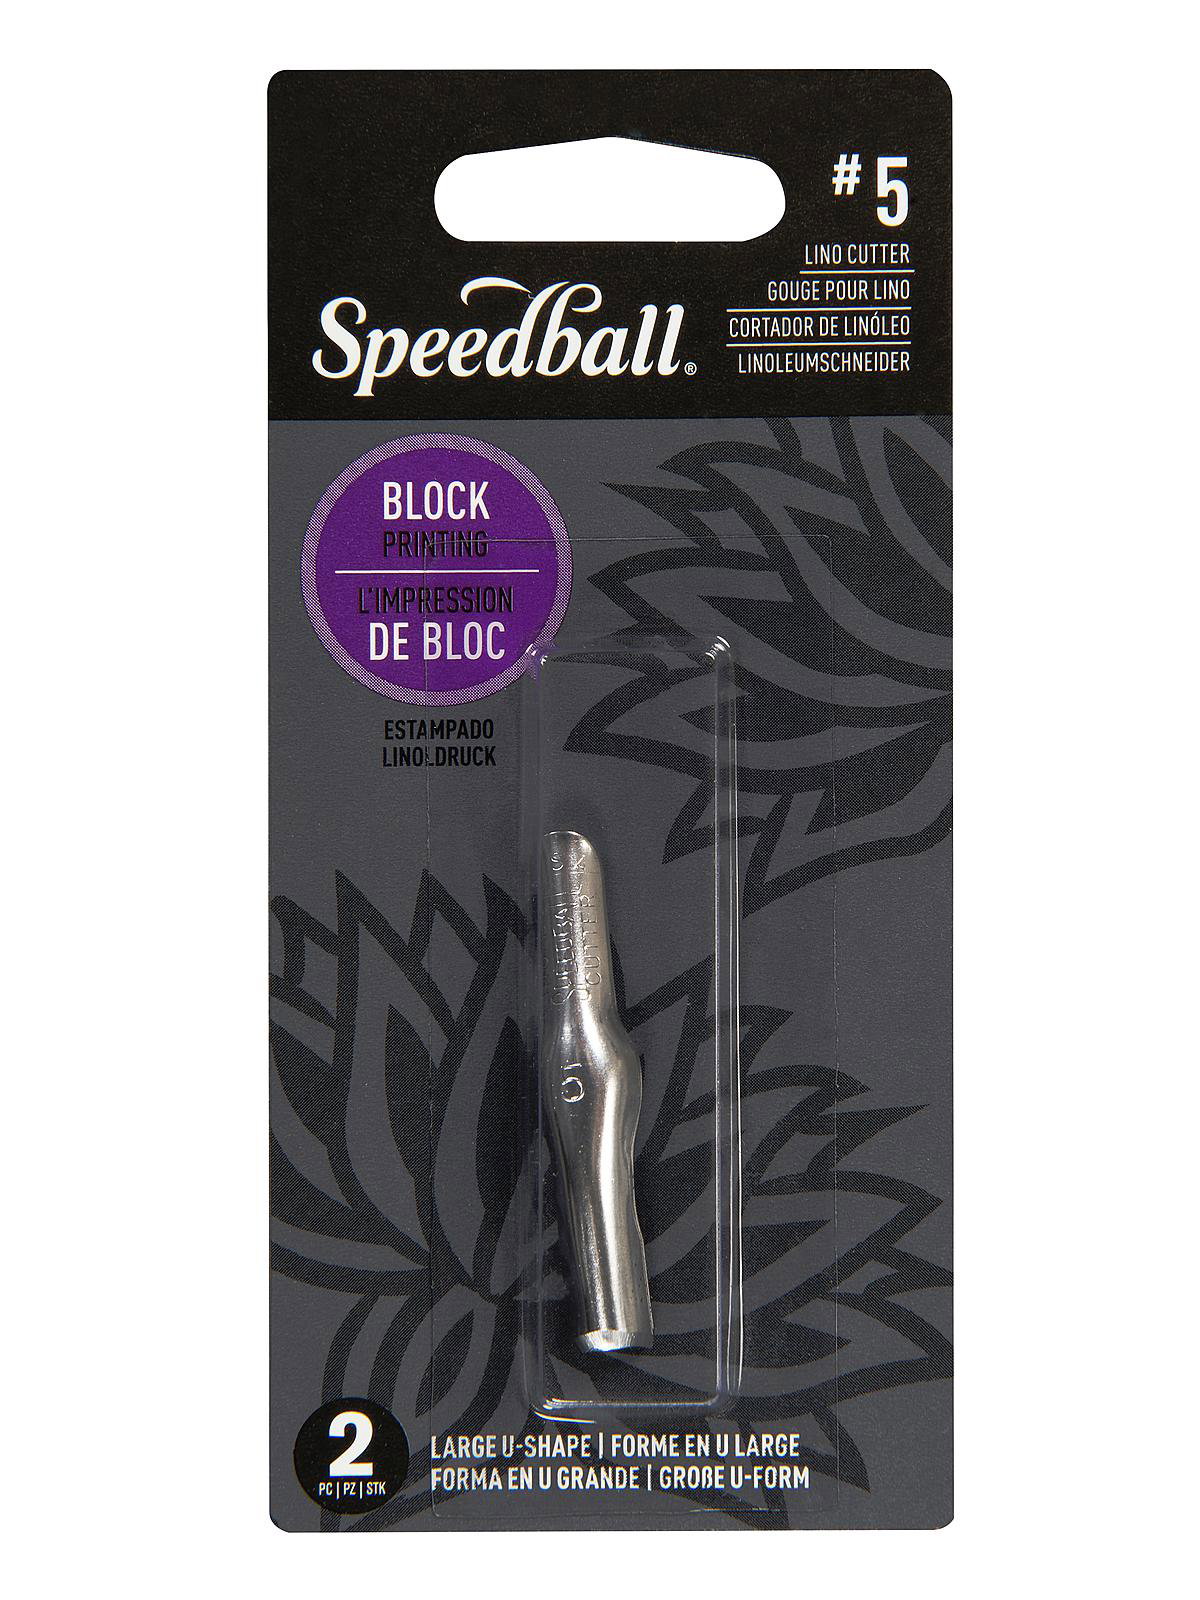 12 Pack: Speedball® Linoleum Cutter Assortment #1